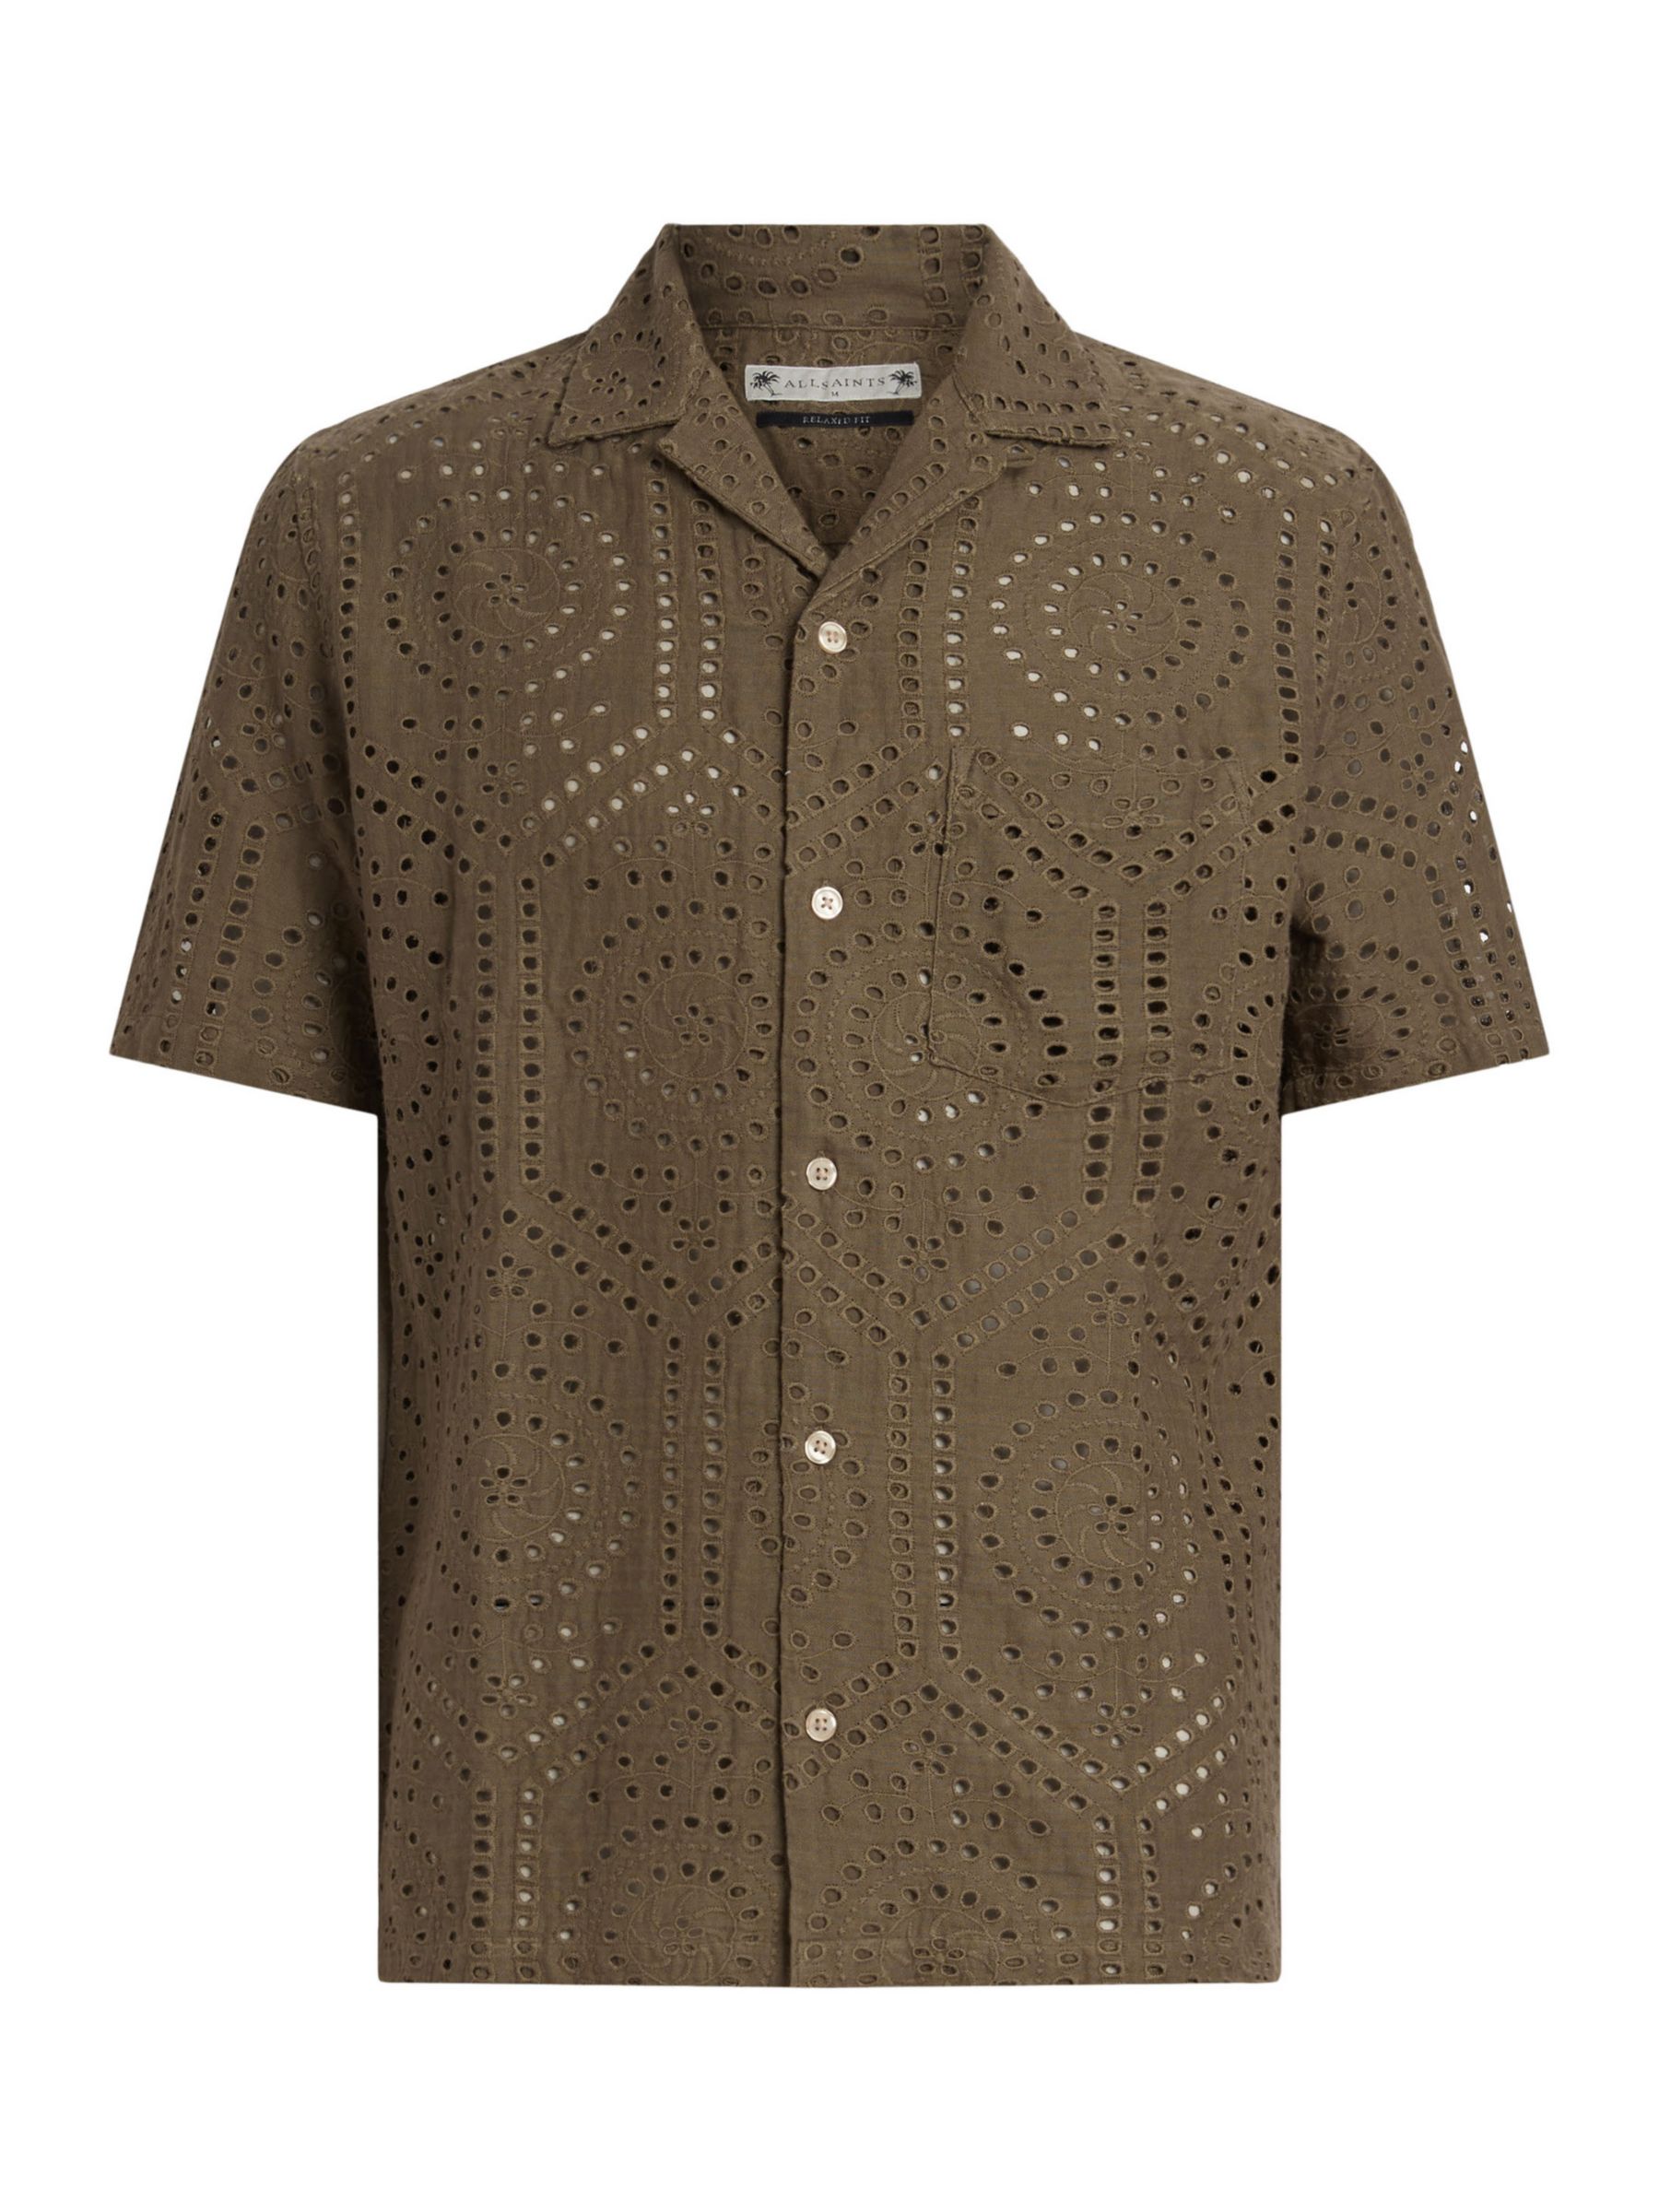 AllSaints Pueblo Short Sleeve Broderie Shirt, Ash Khaki Green, L